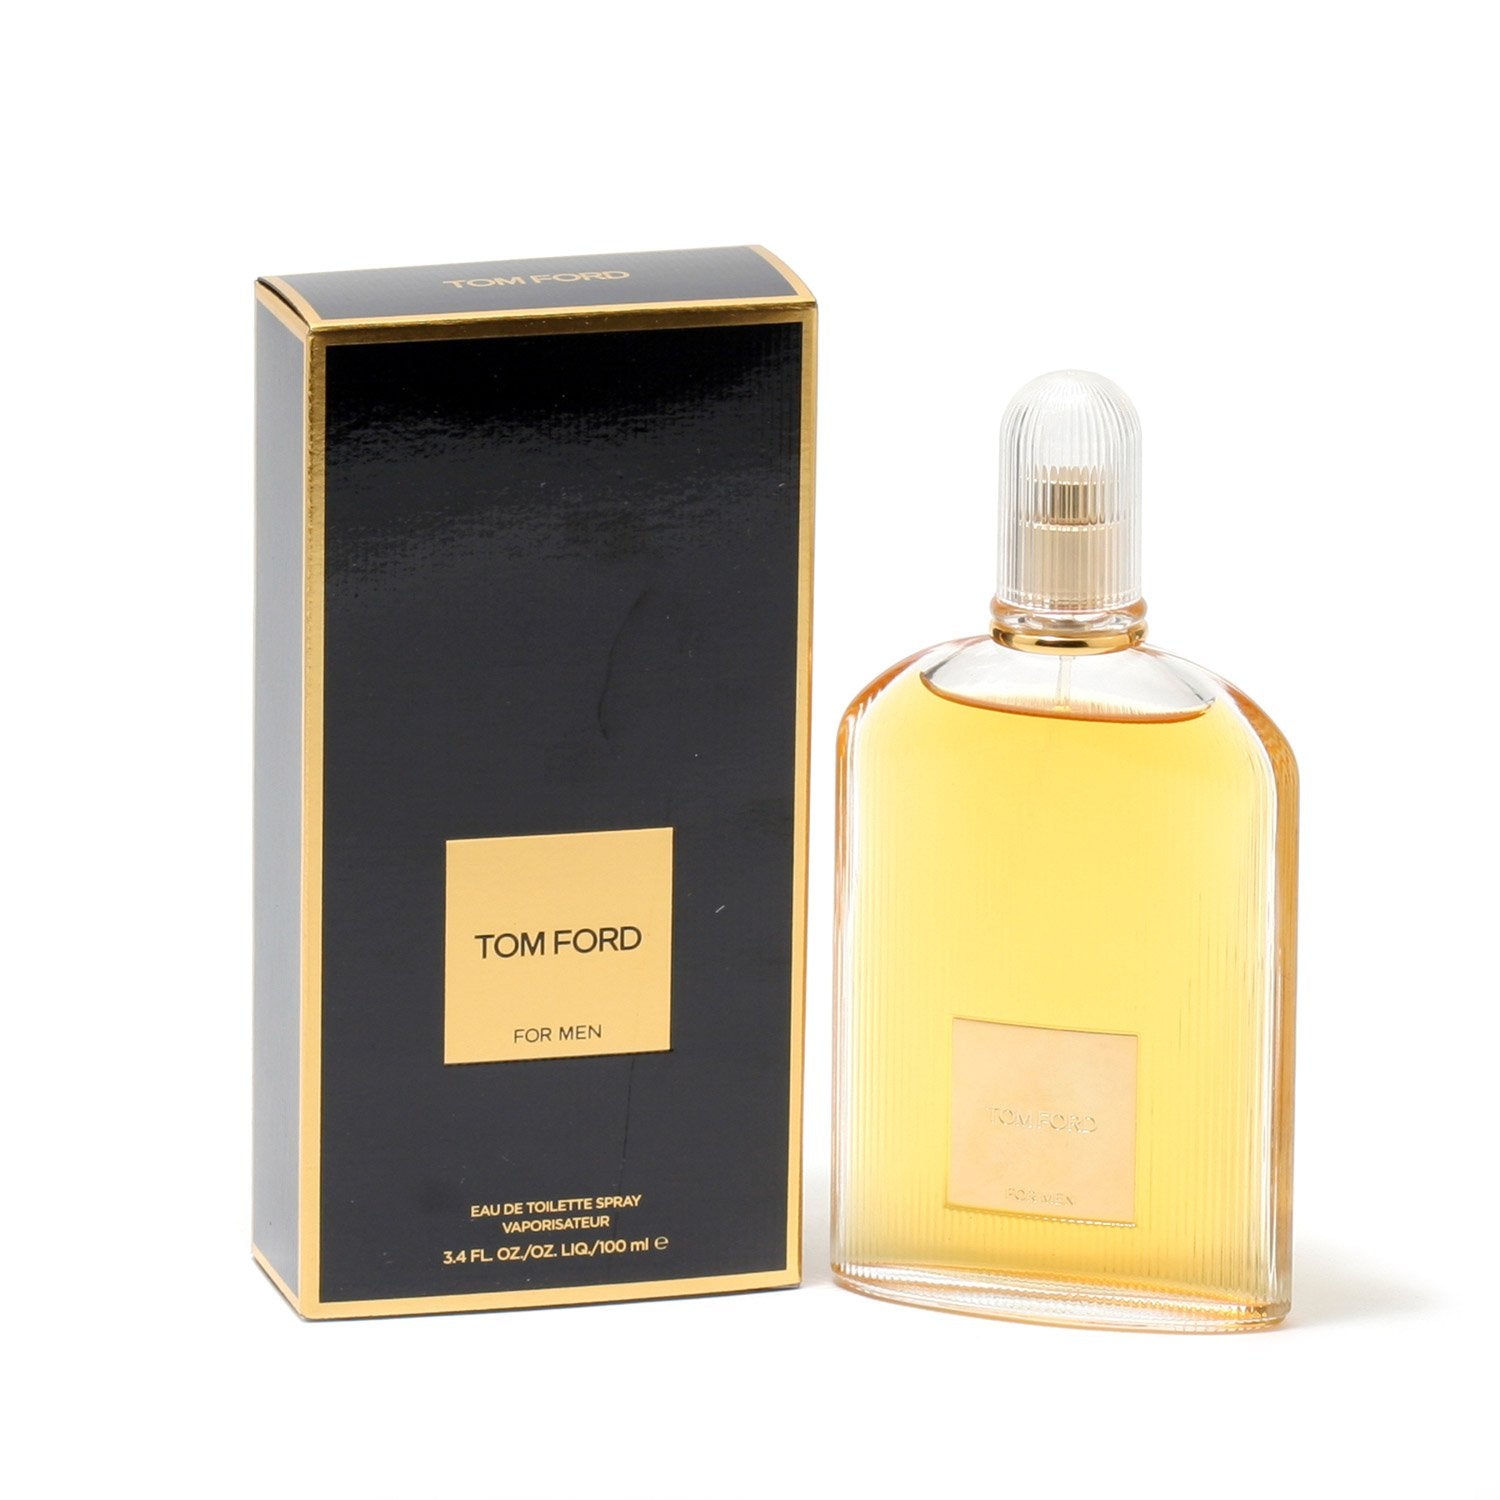 TOM FORD FOR MEN - EAU DE TOILETTE SPRAY, 3.4 OZ – Fragrance Room